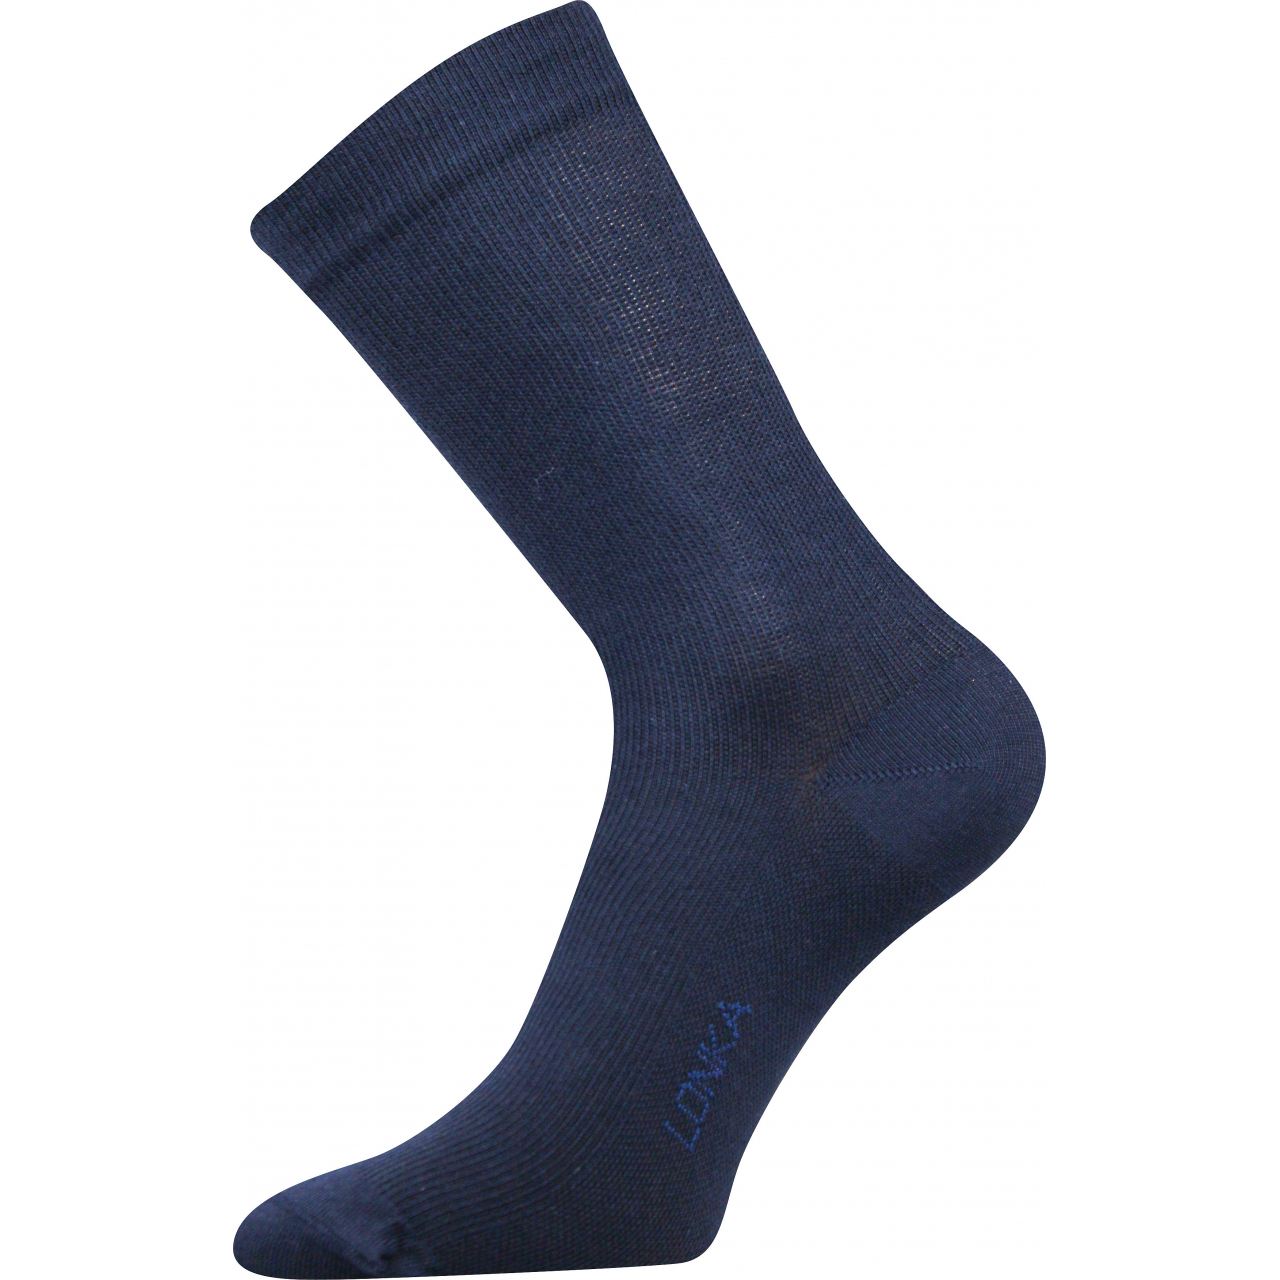 Ponožky kompresní Lonka Kooper - tmavě modré, 39-42